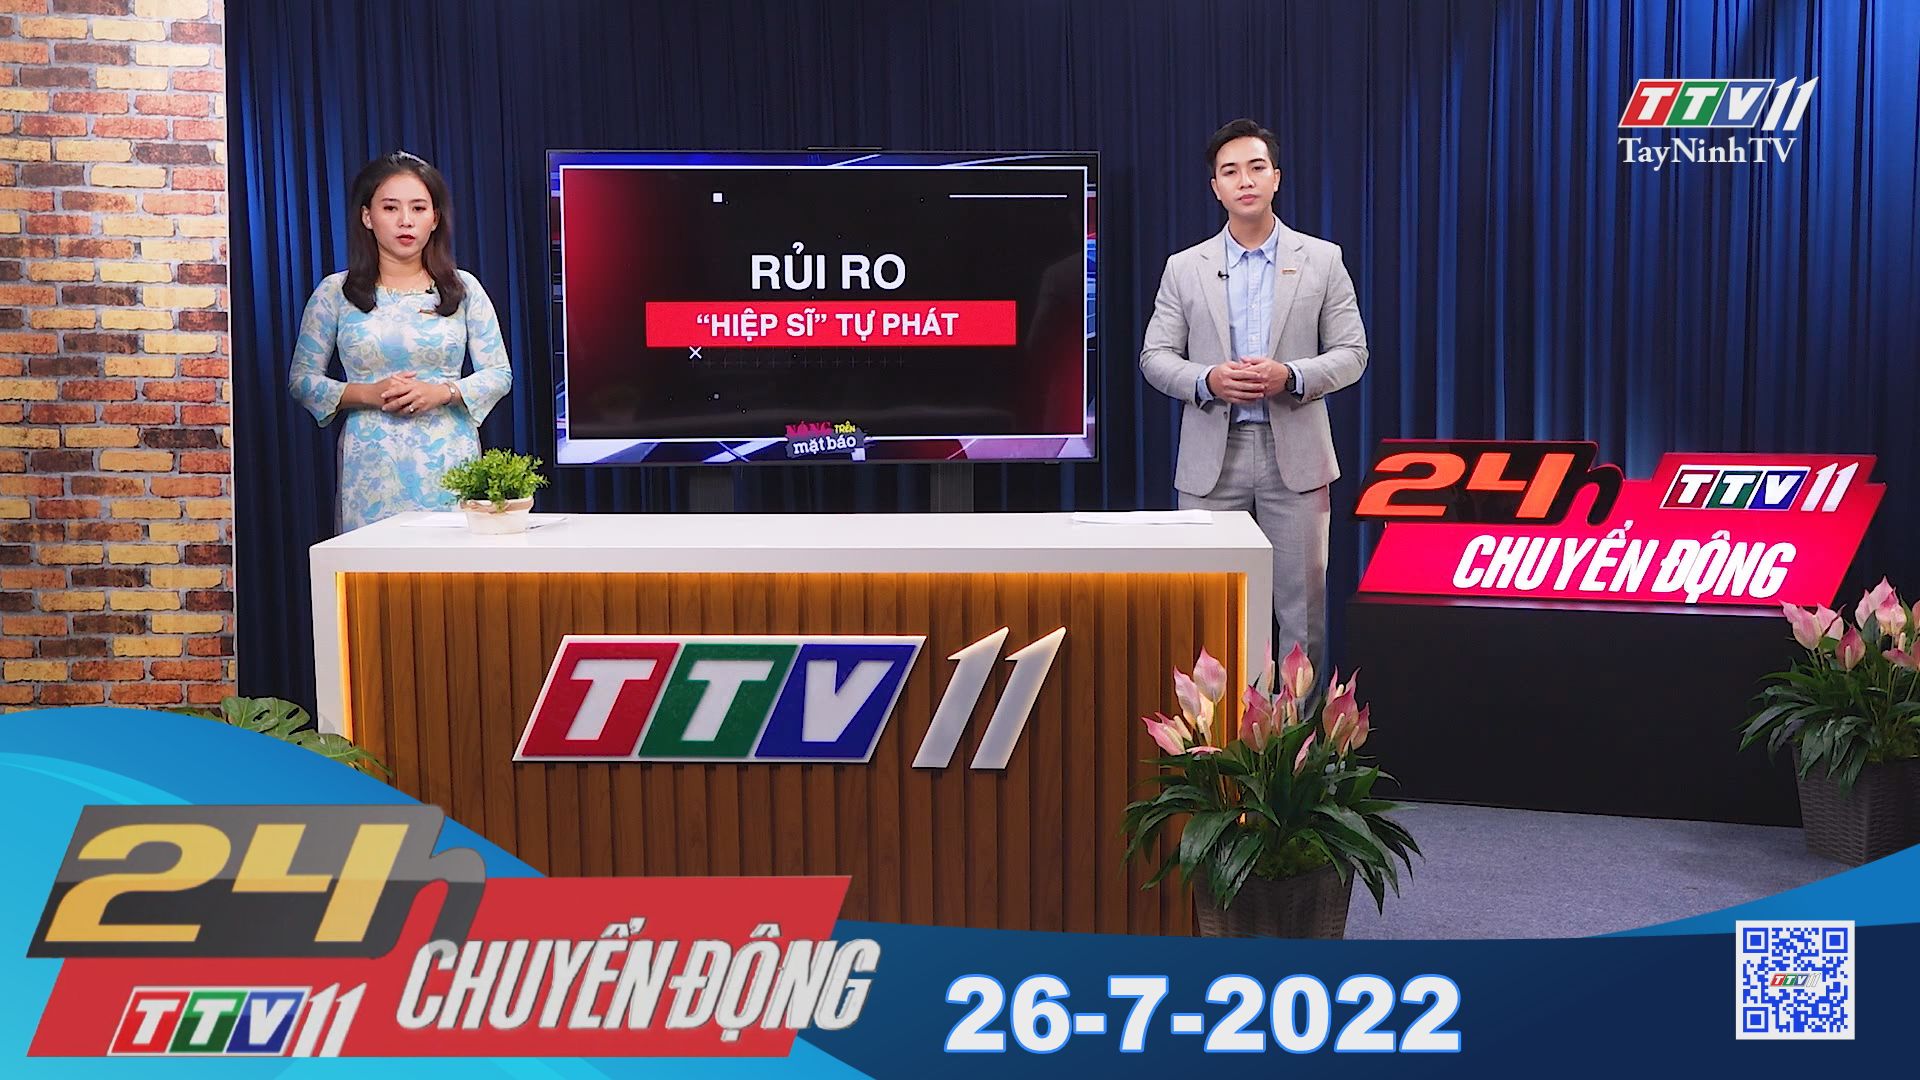 24h Chuyển động 26-7-2022 | Tin tức hôm nay | TayNinhTV